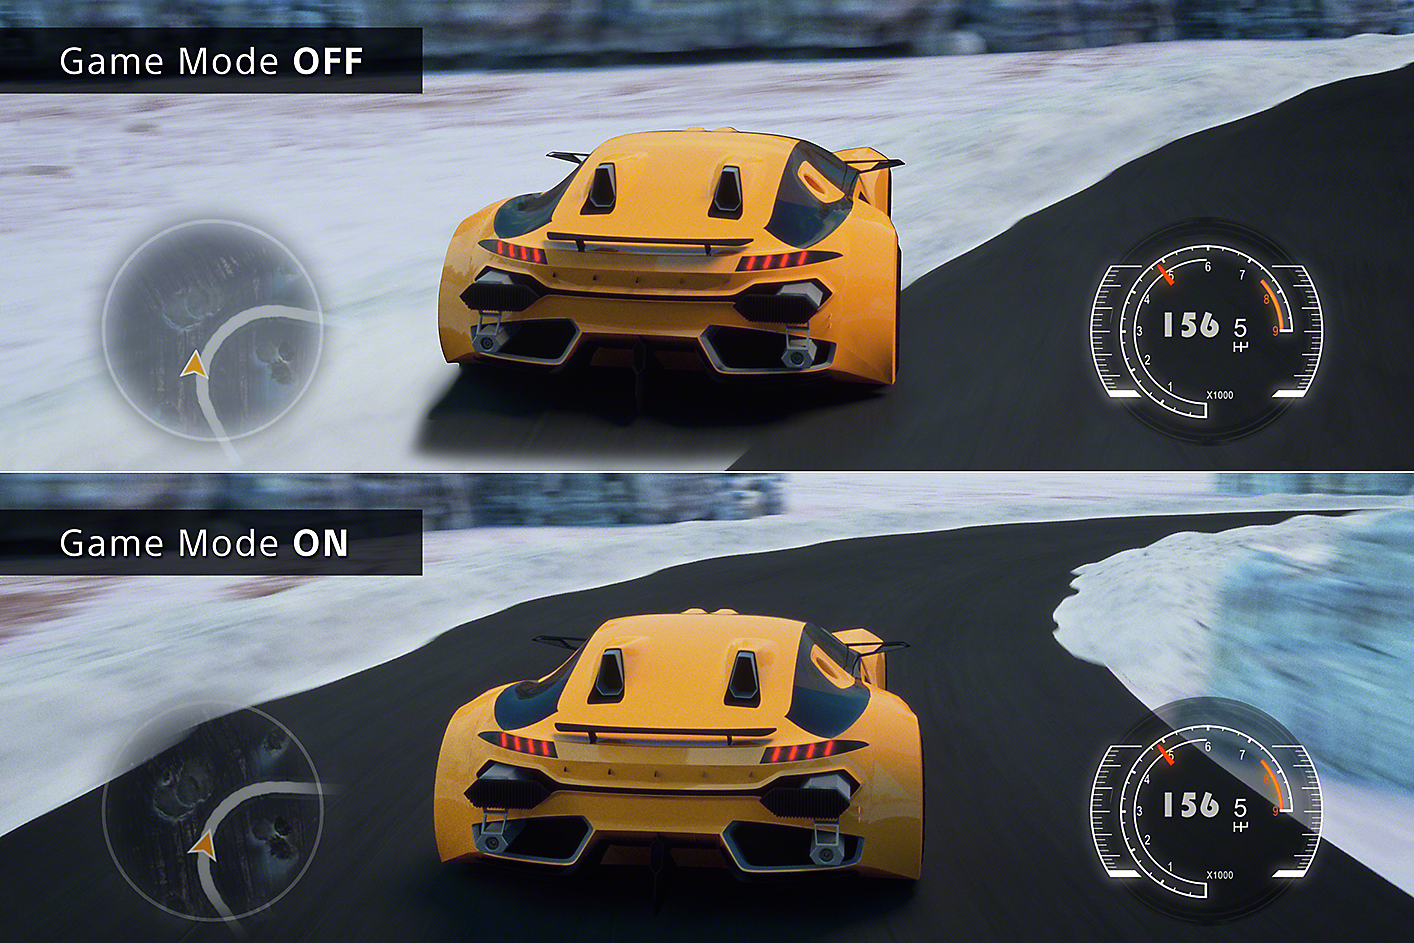 Σύγκριση 2 σκηνών παιχνιδιού όπου ένα αμάξι εκτροχιάζεται με ΑΝΕΝΕΡΓΗ λειτουργία παιχνιδιού και στην άλλη το αμάξι δεν εκτροχιάζεται με ΕΝΕΡΓΗ τη λειτουργία.